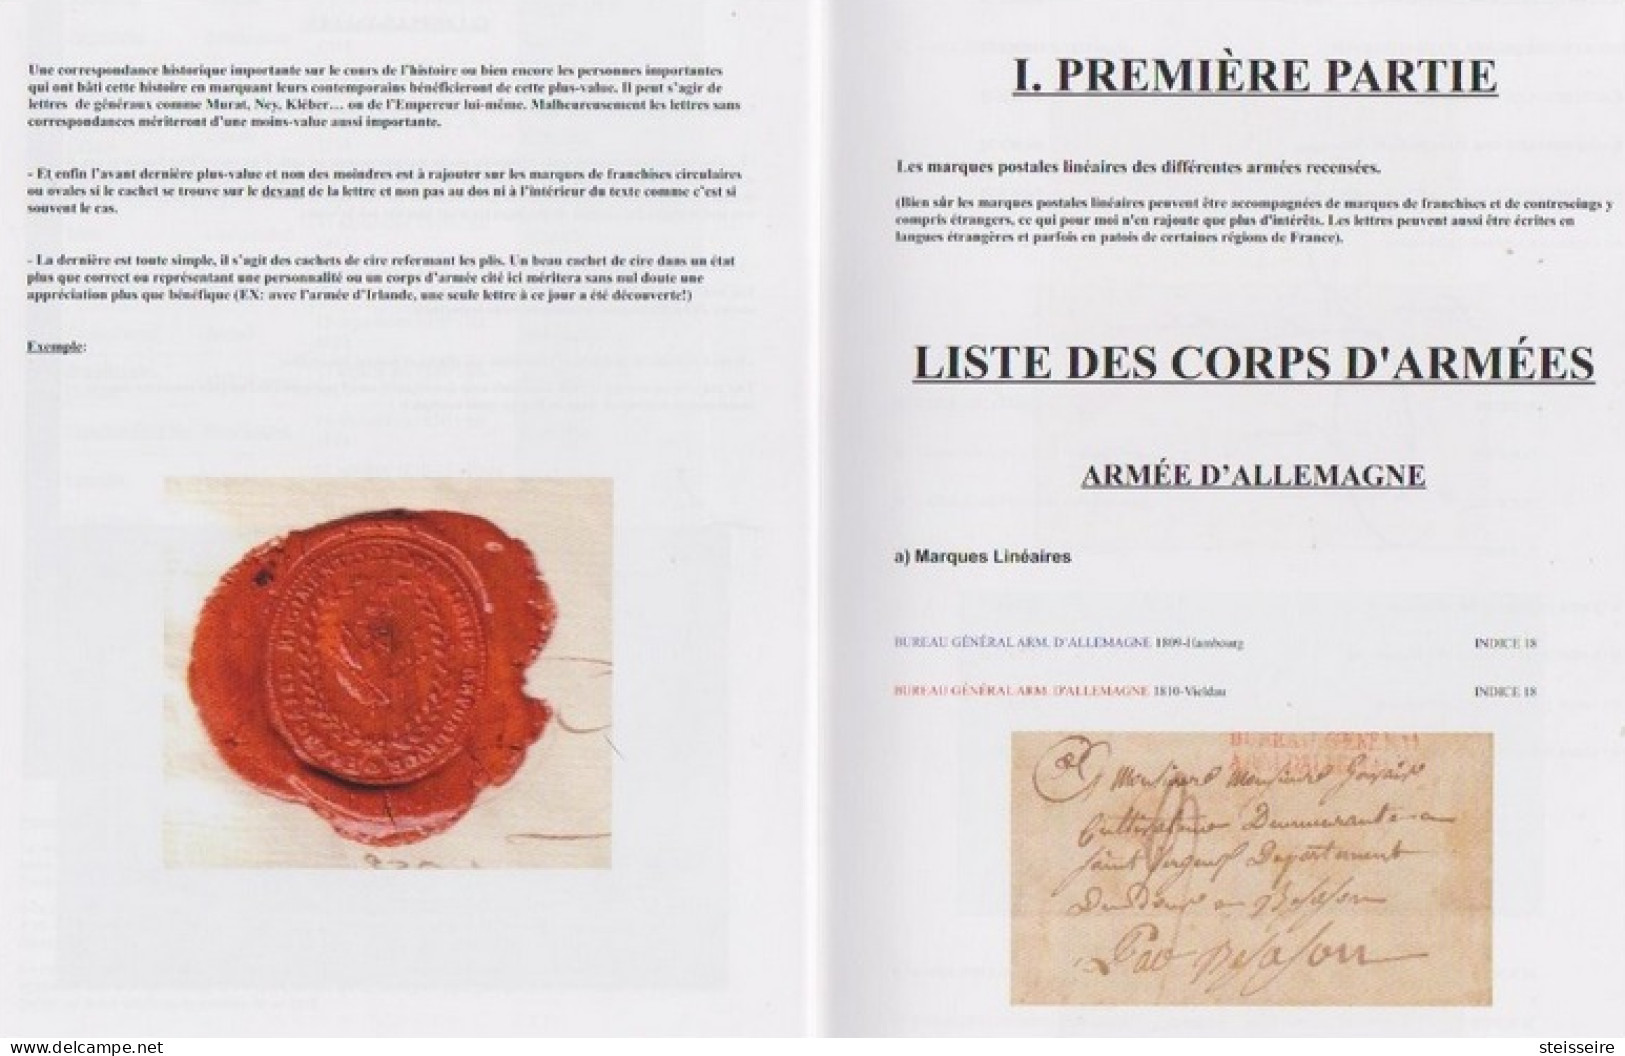 NOUVEAU CATALOGUE DE COTATIONS DES MARQUES POSTALES D'ARMÉES Période 1792/1848 - ...-1853 Préphilatélie